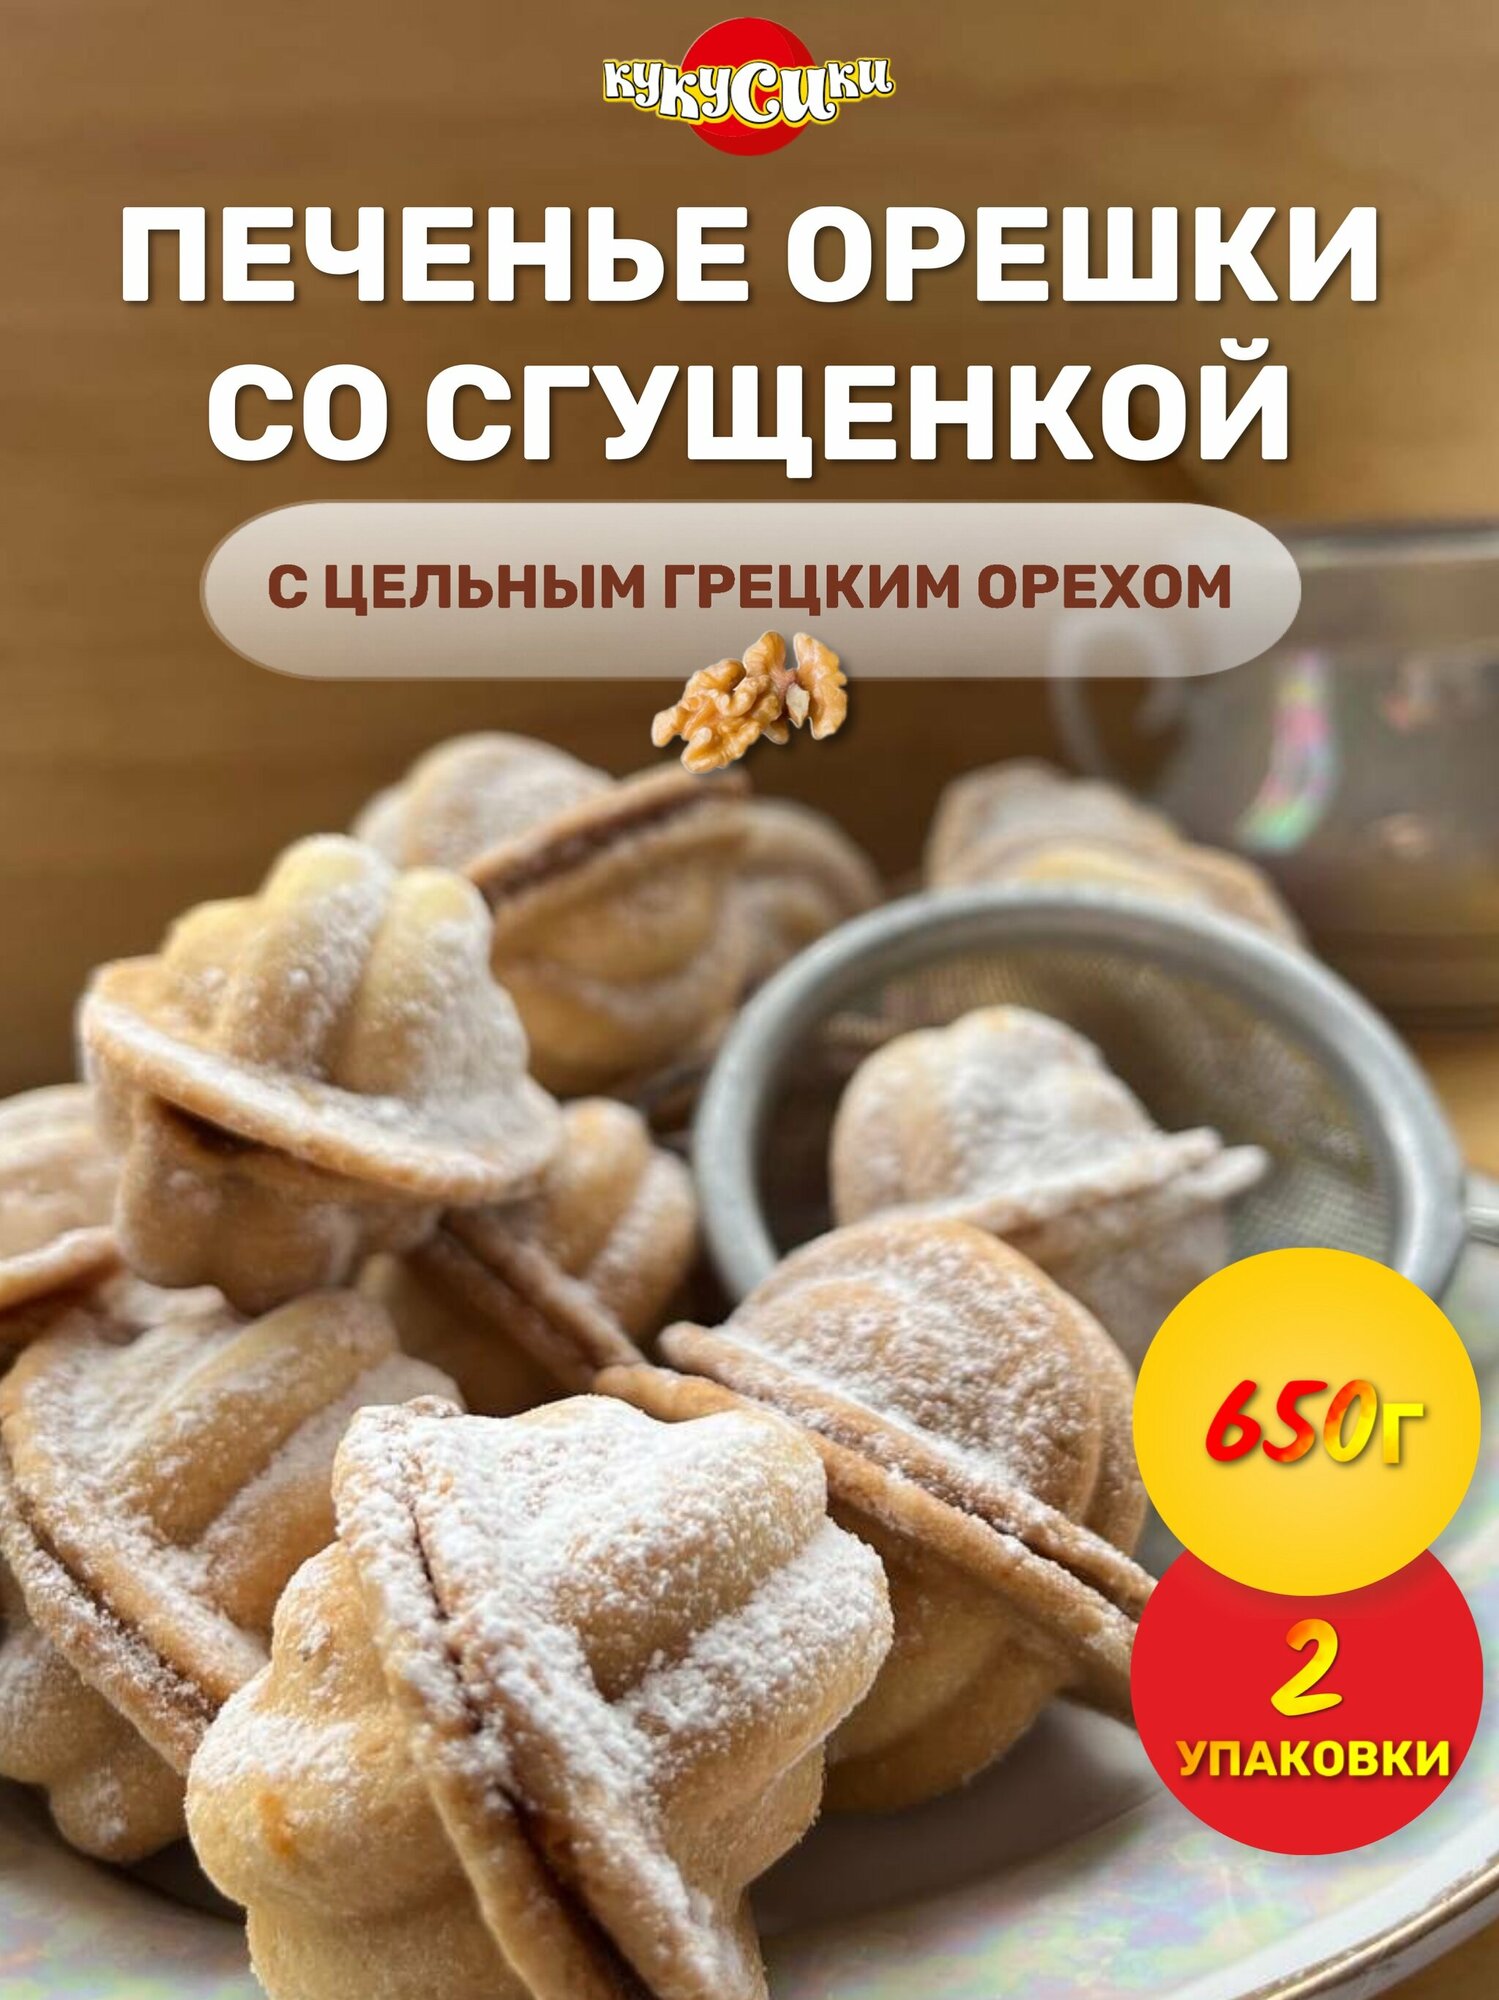 Печенье орешки со сгущенкой сдобное 650 грамм х 2 шт